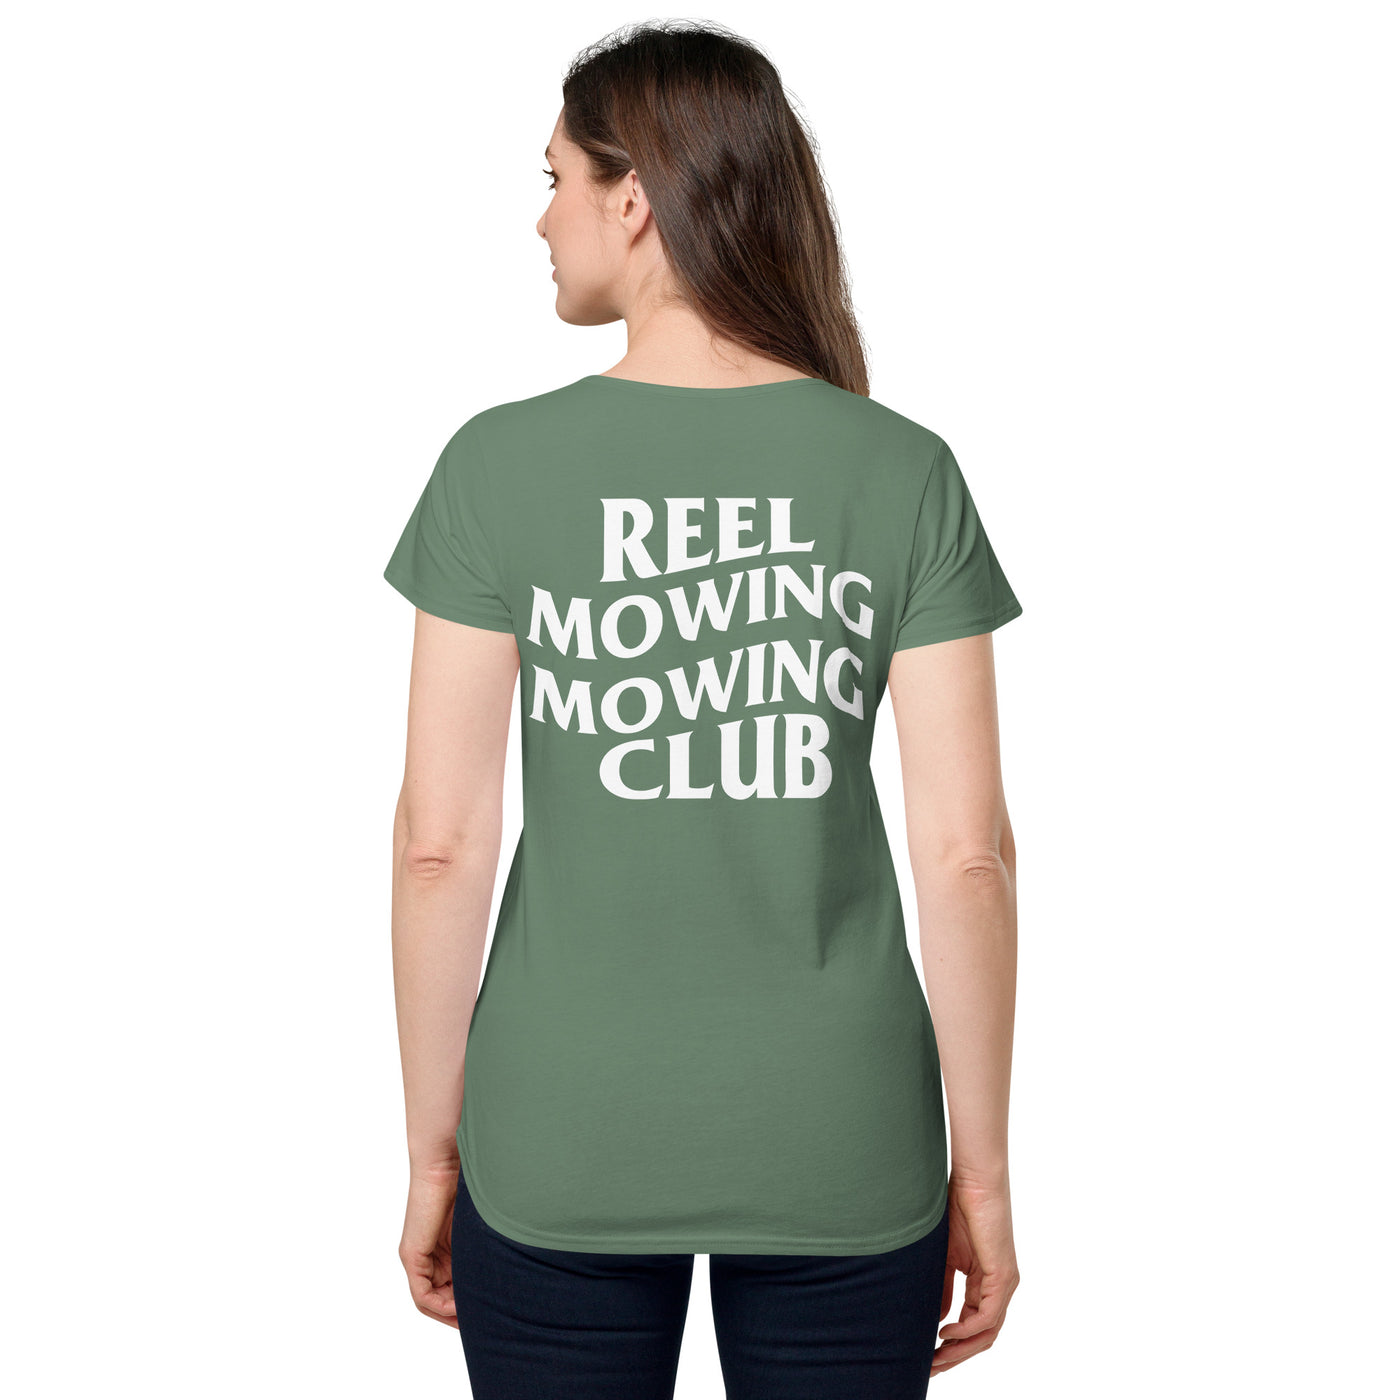 REEL MOWING MOWING CLUB